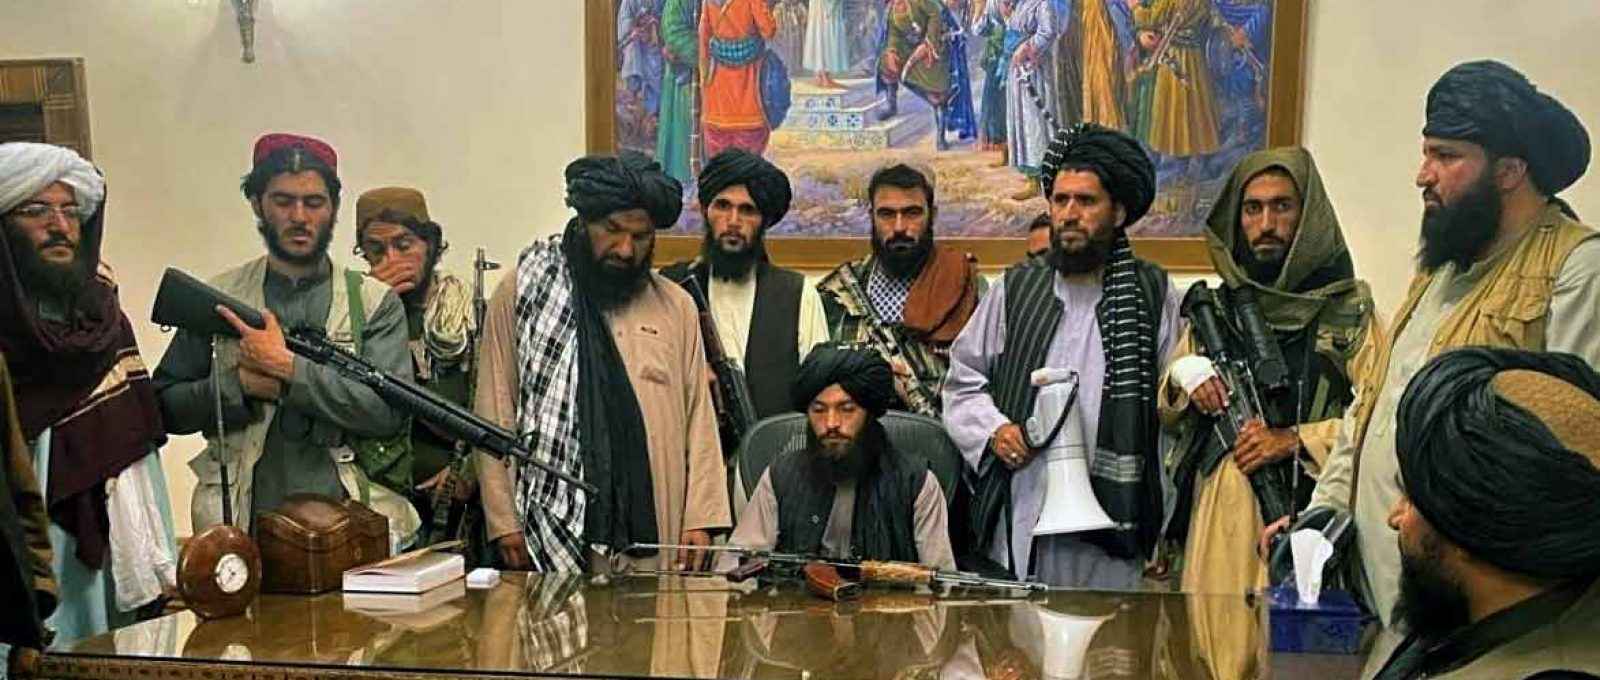 Combatentes do Talibã assumem o controle do palácio presidencial em Cabul, Afeganistão (Foto: Zabi Karimi/AP Photo).